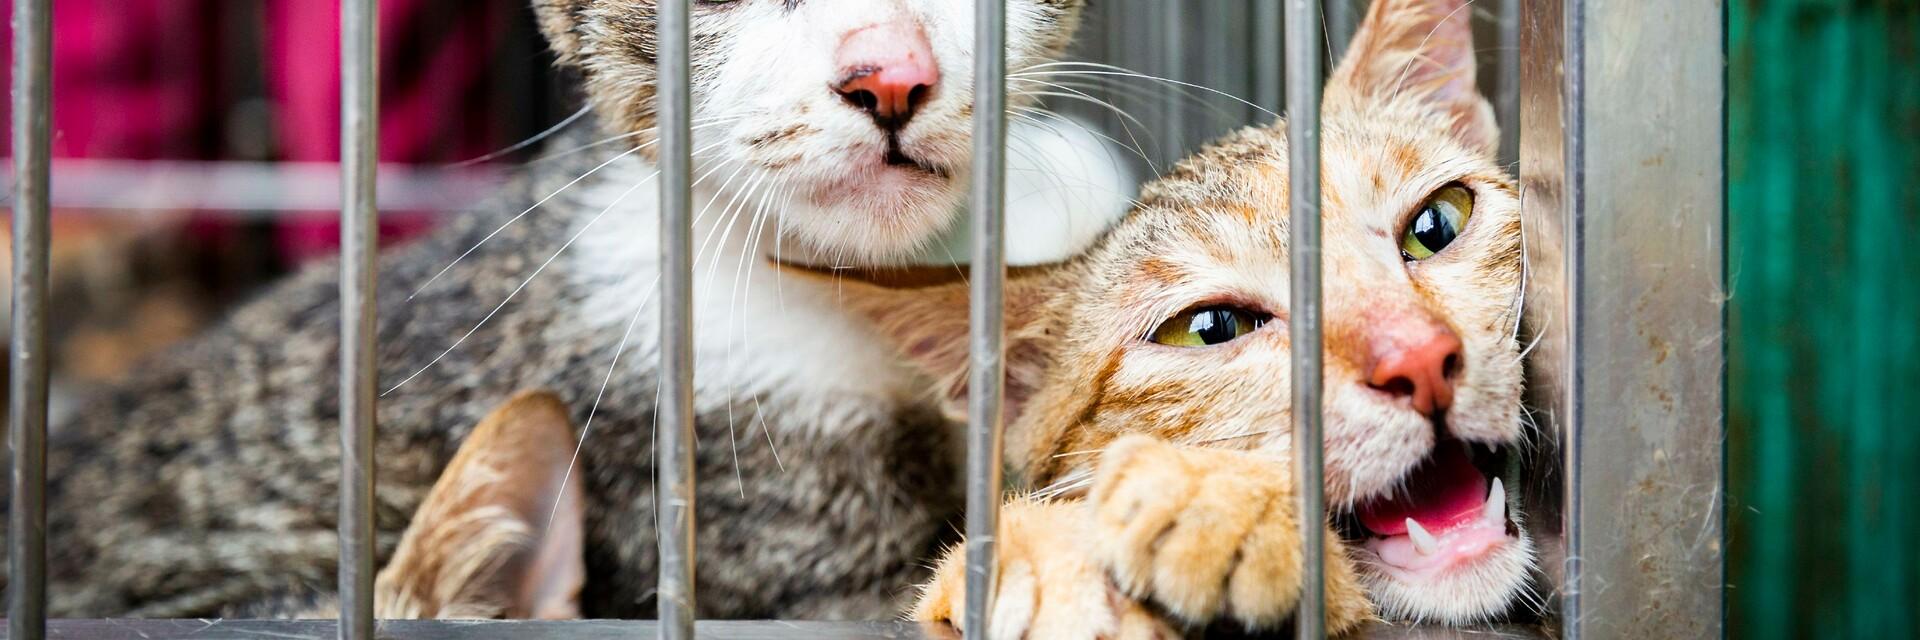 Katten in een kooi